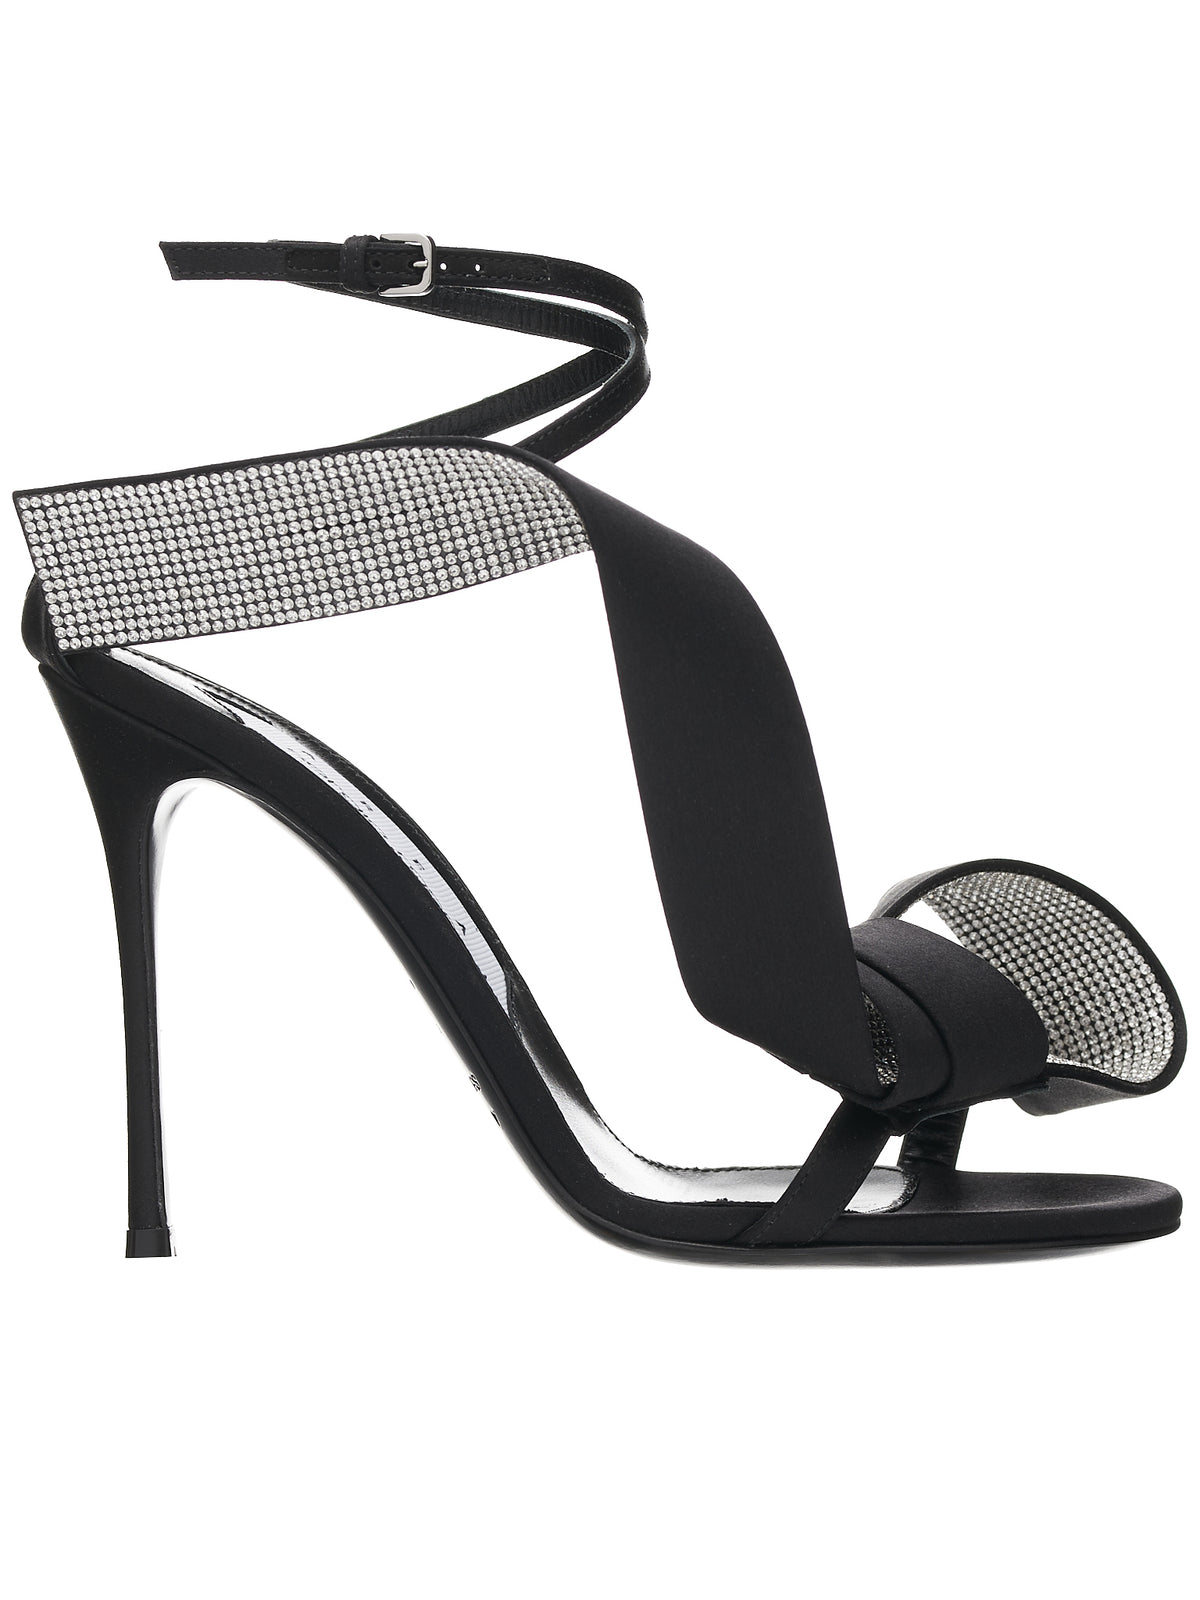 AREA Marquise Sandal Heels (B03370-MFI912-1000-110-NERO-CR)